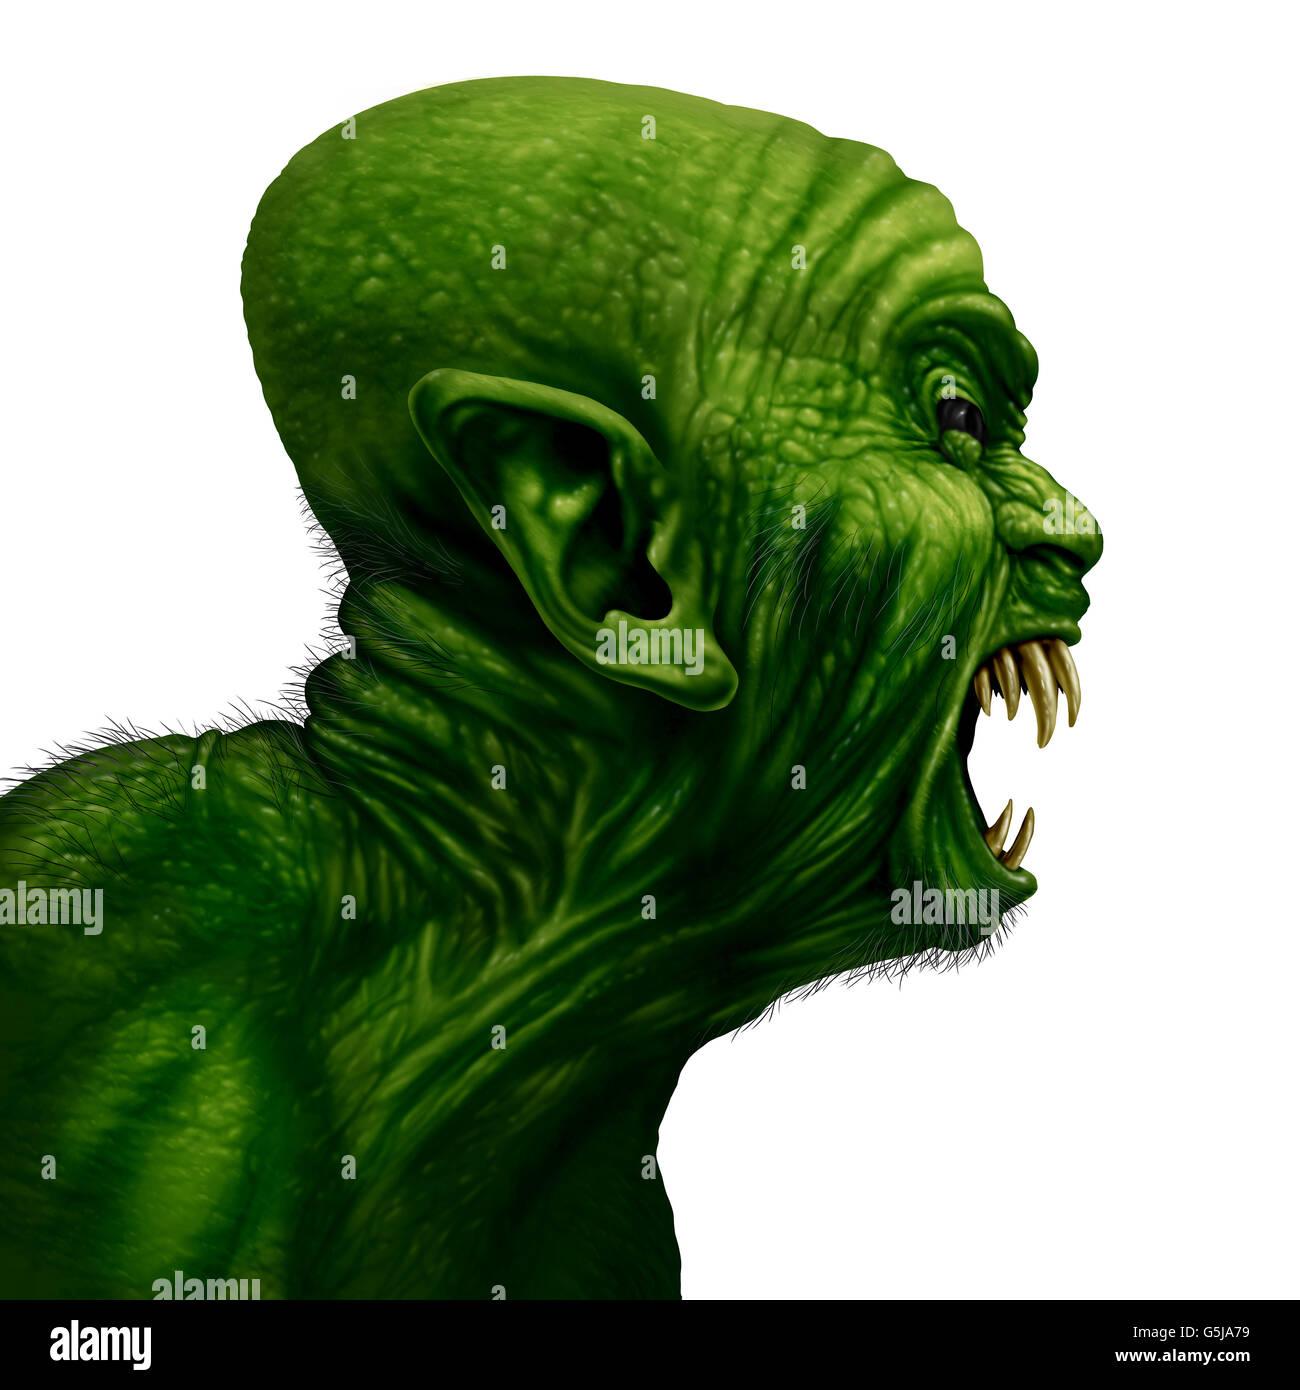 Monster vista laterale della testata come uno zombie faccia o bestia mutante urlando come creepy halloween o arrabbiati spaventoso demone con il simbolo verde testurizzata stropicciata skinisolated su sfondo bianco in un realistico 3D illustrazione dello stile. Foto Stock